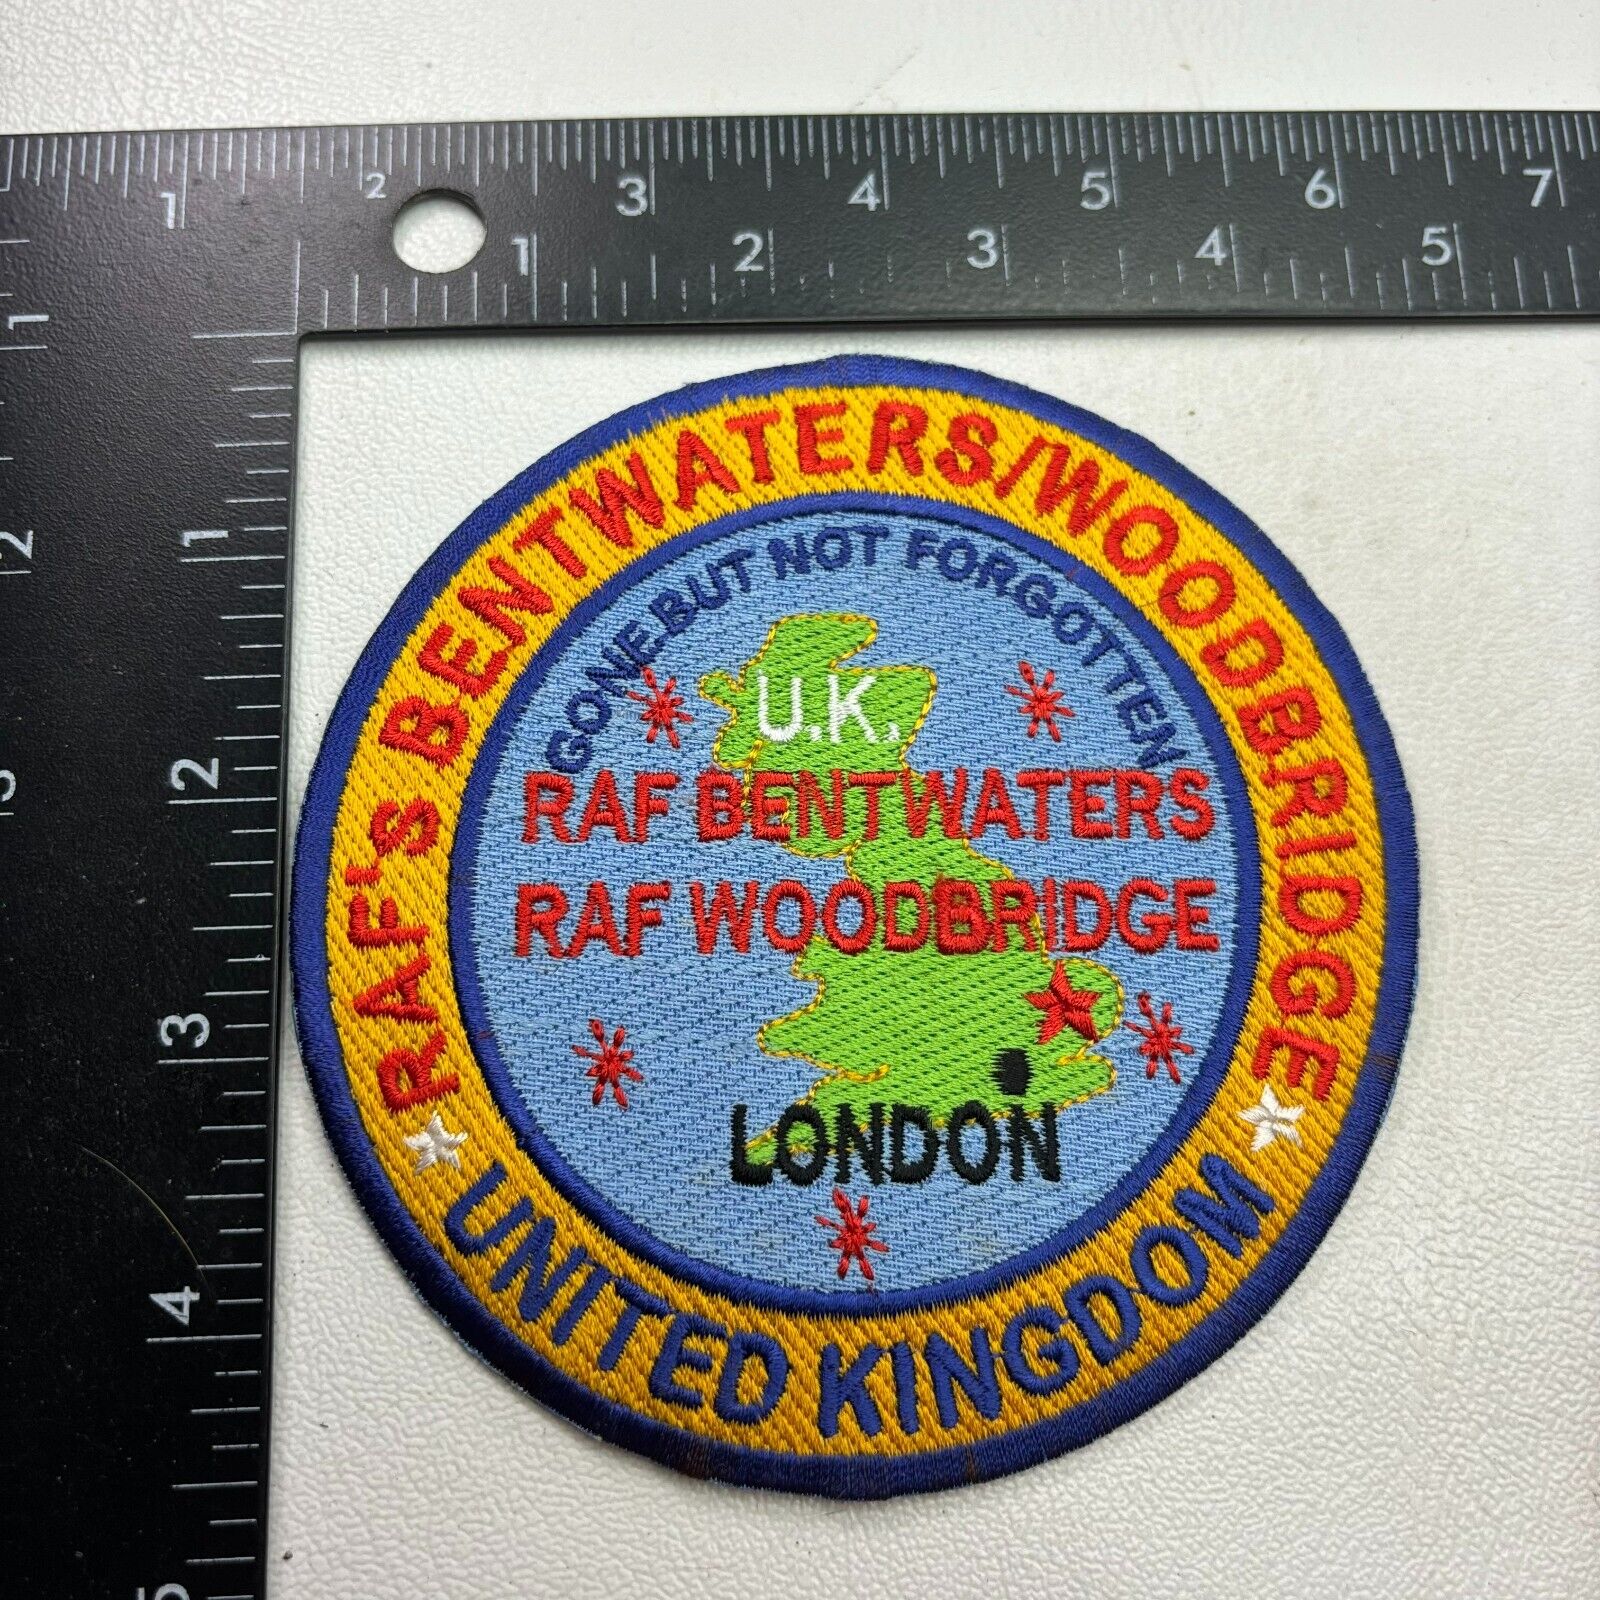 RAF BENTWATERS RAF WOODBRIDGE Royal Air Force London United Kingdom Patch 421F